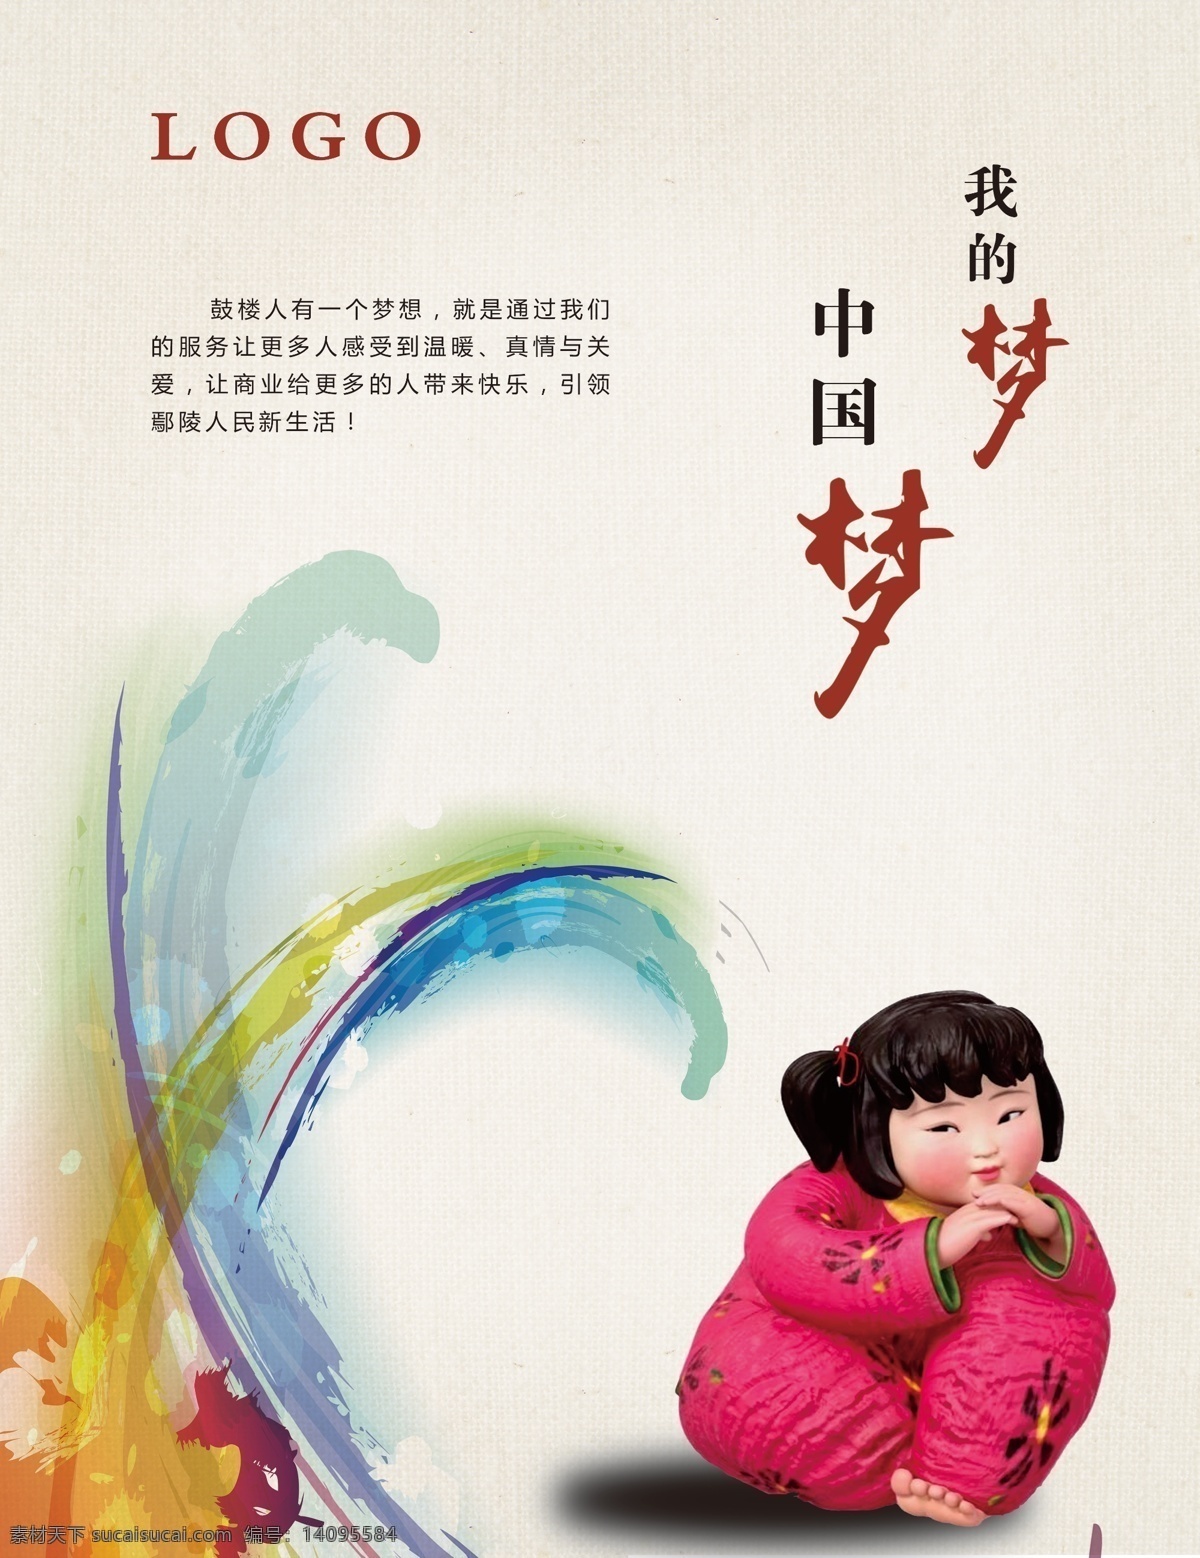 中国梦 中国风 公益 娃娃 可爱 梦想 励志 文明 标志图标 其他图标